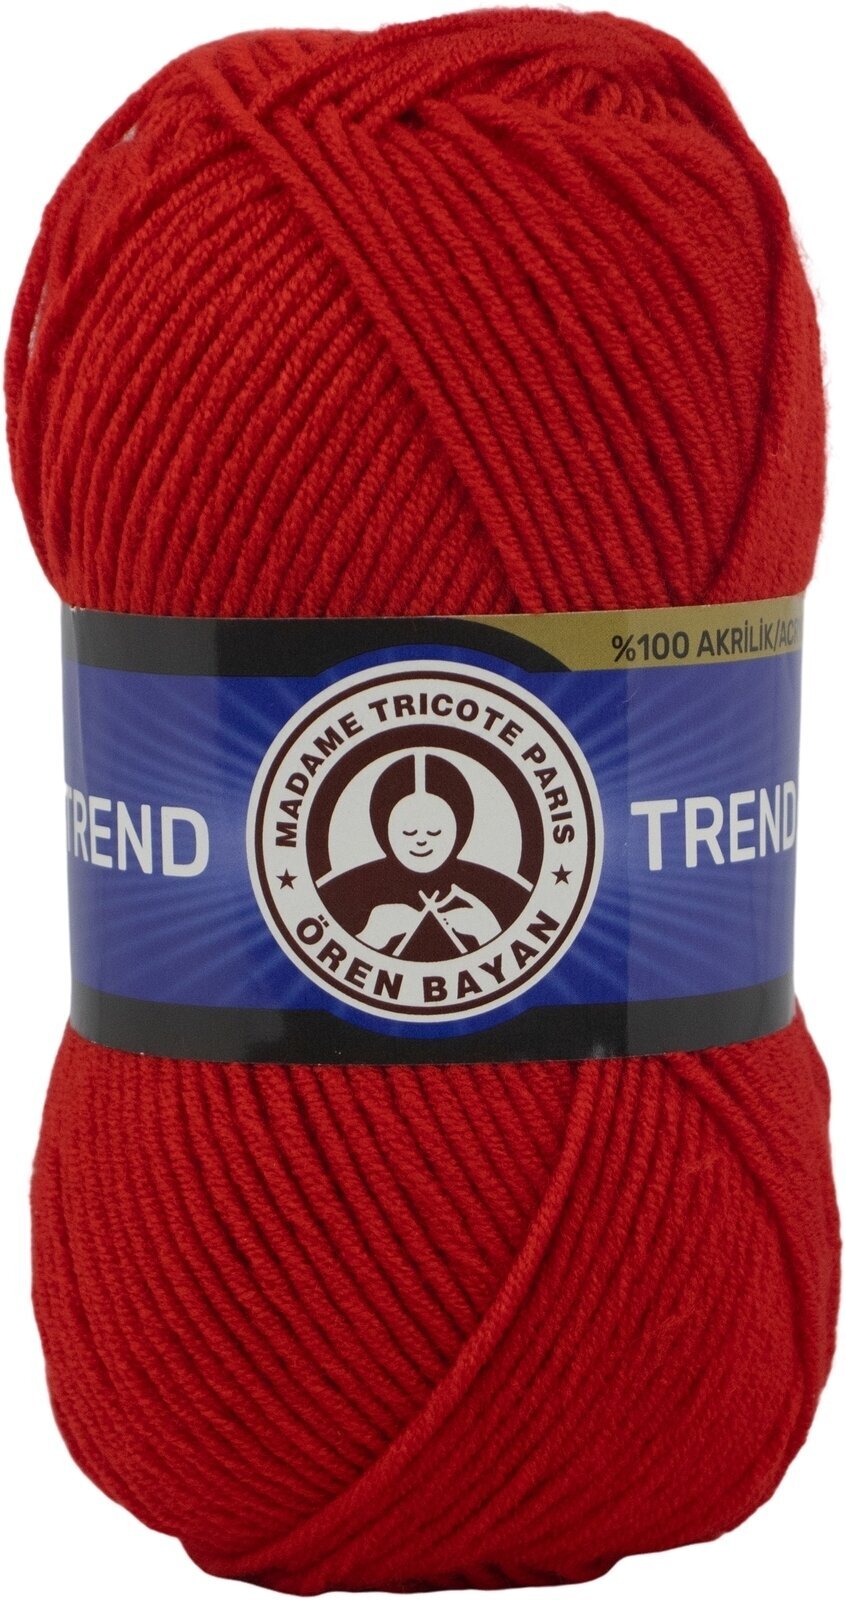 Stickgarn Madame Tricote Paris Trend 3019 144 Stickgarn